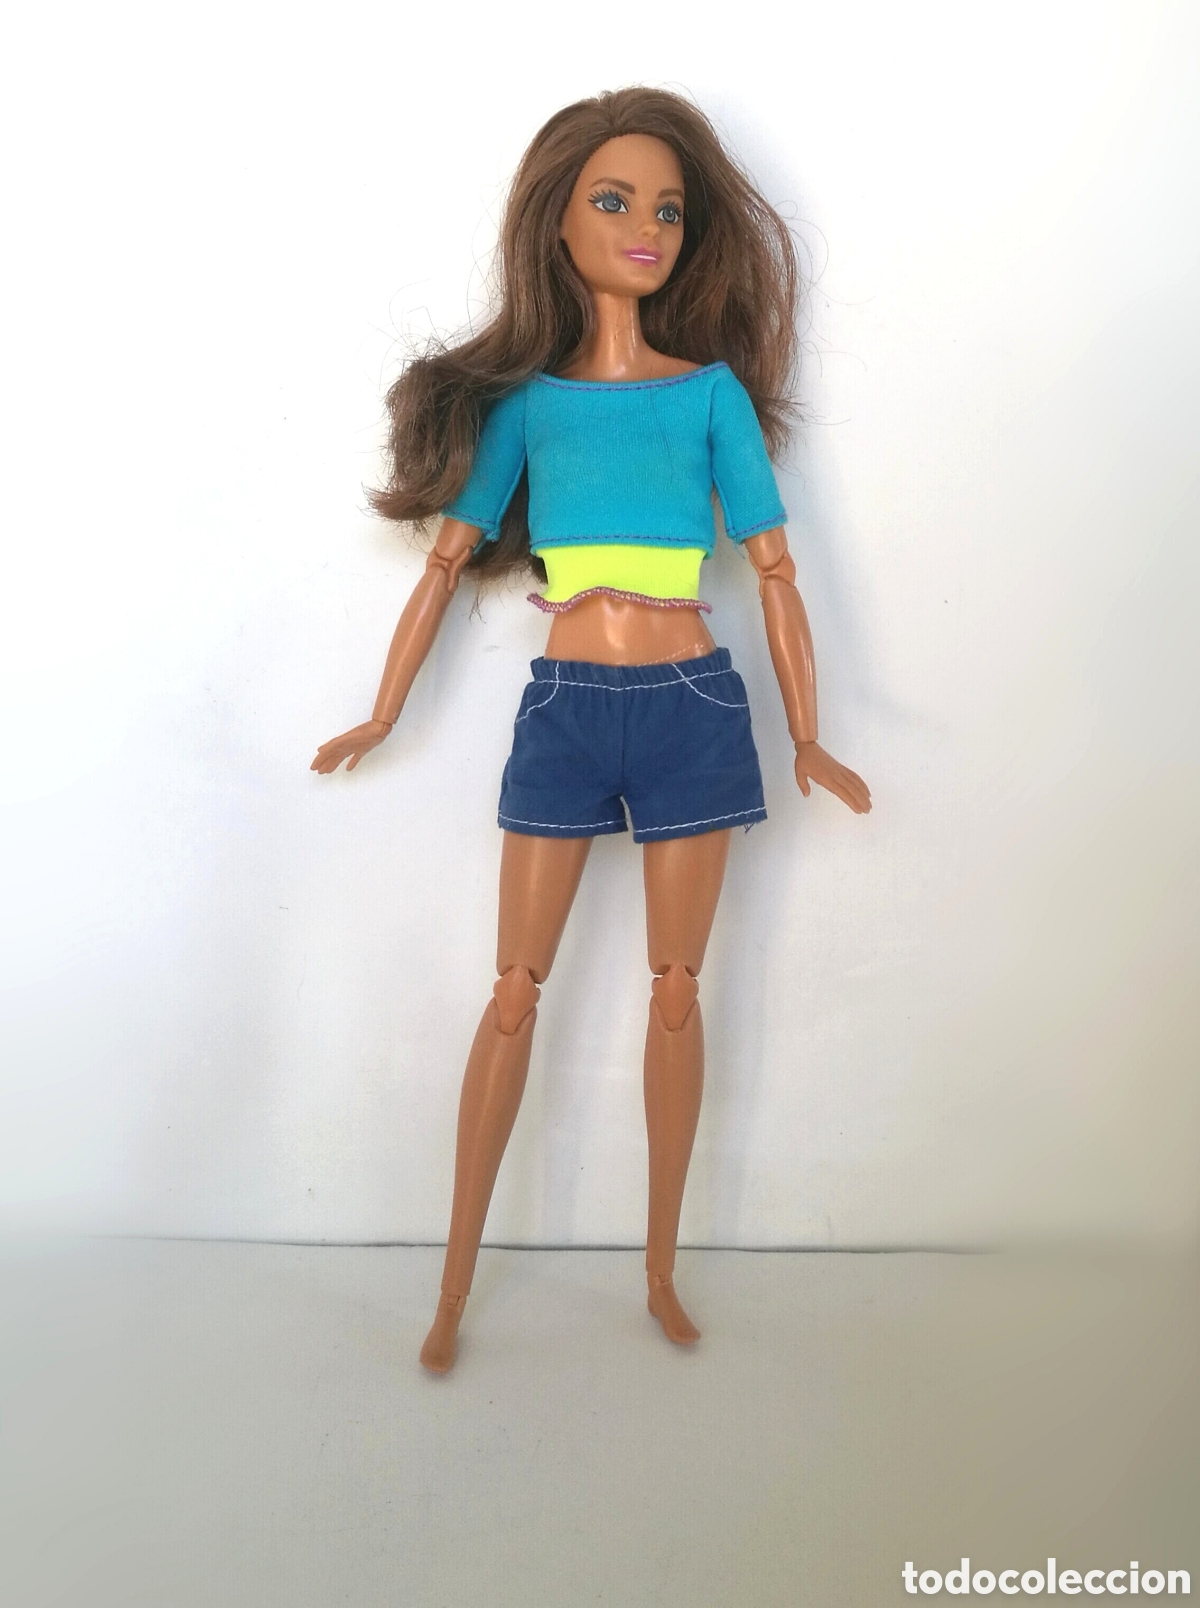 Barbie Yoga: Promoções